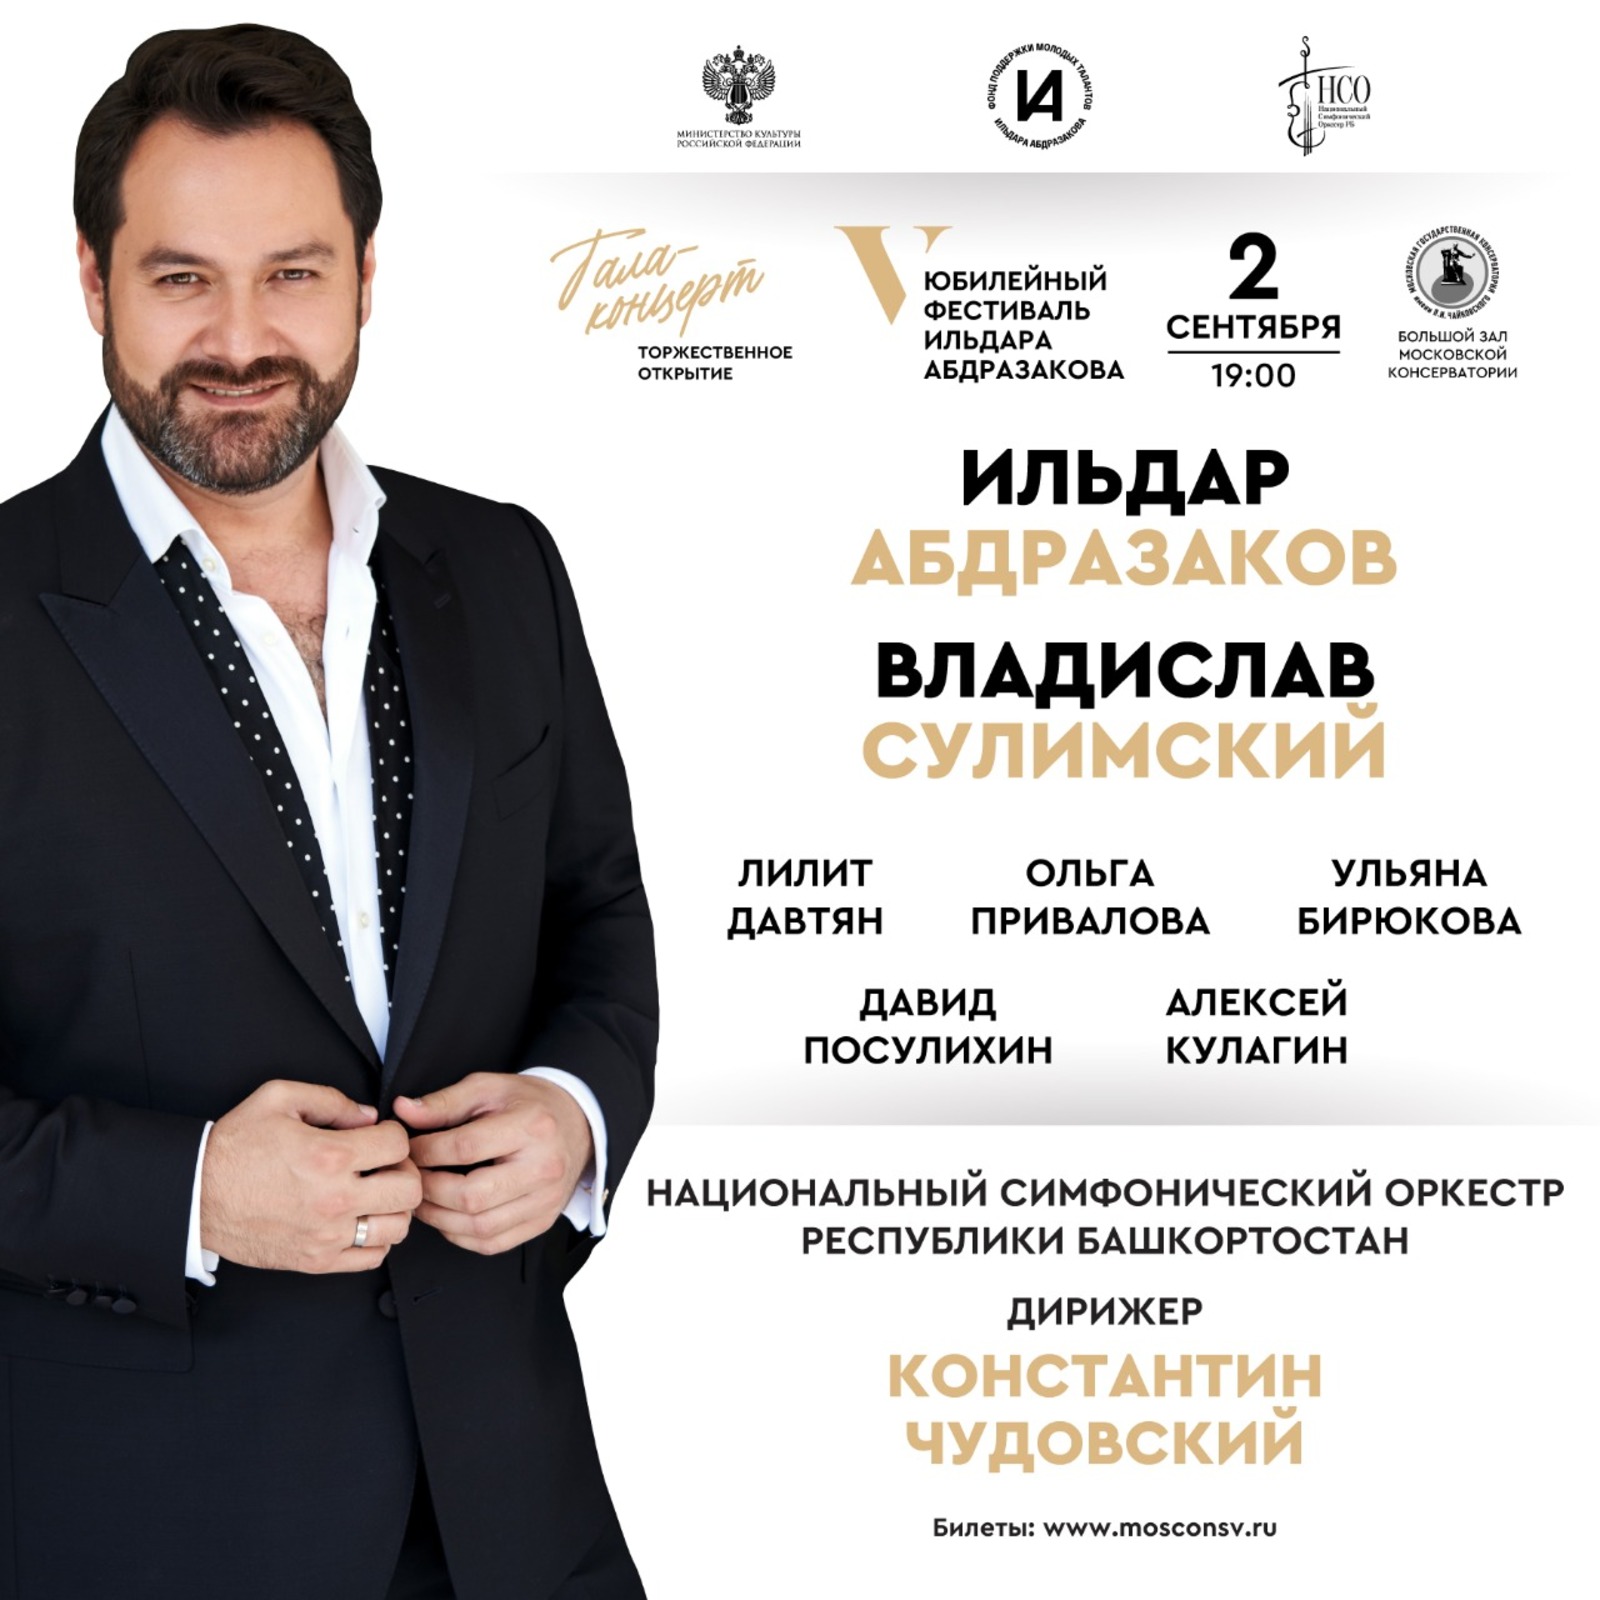 В Москве пройдёт V международный музыкальный фестиваль #AbdrazakovFest